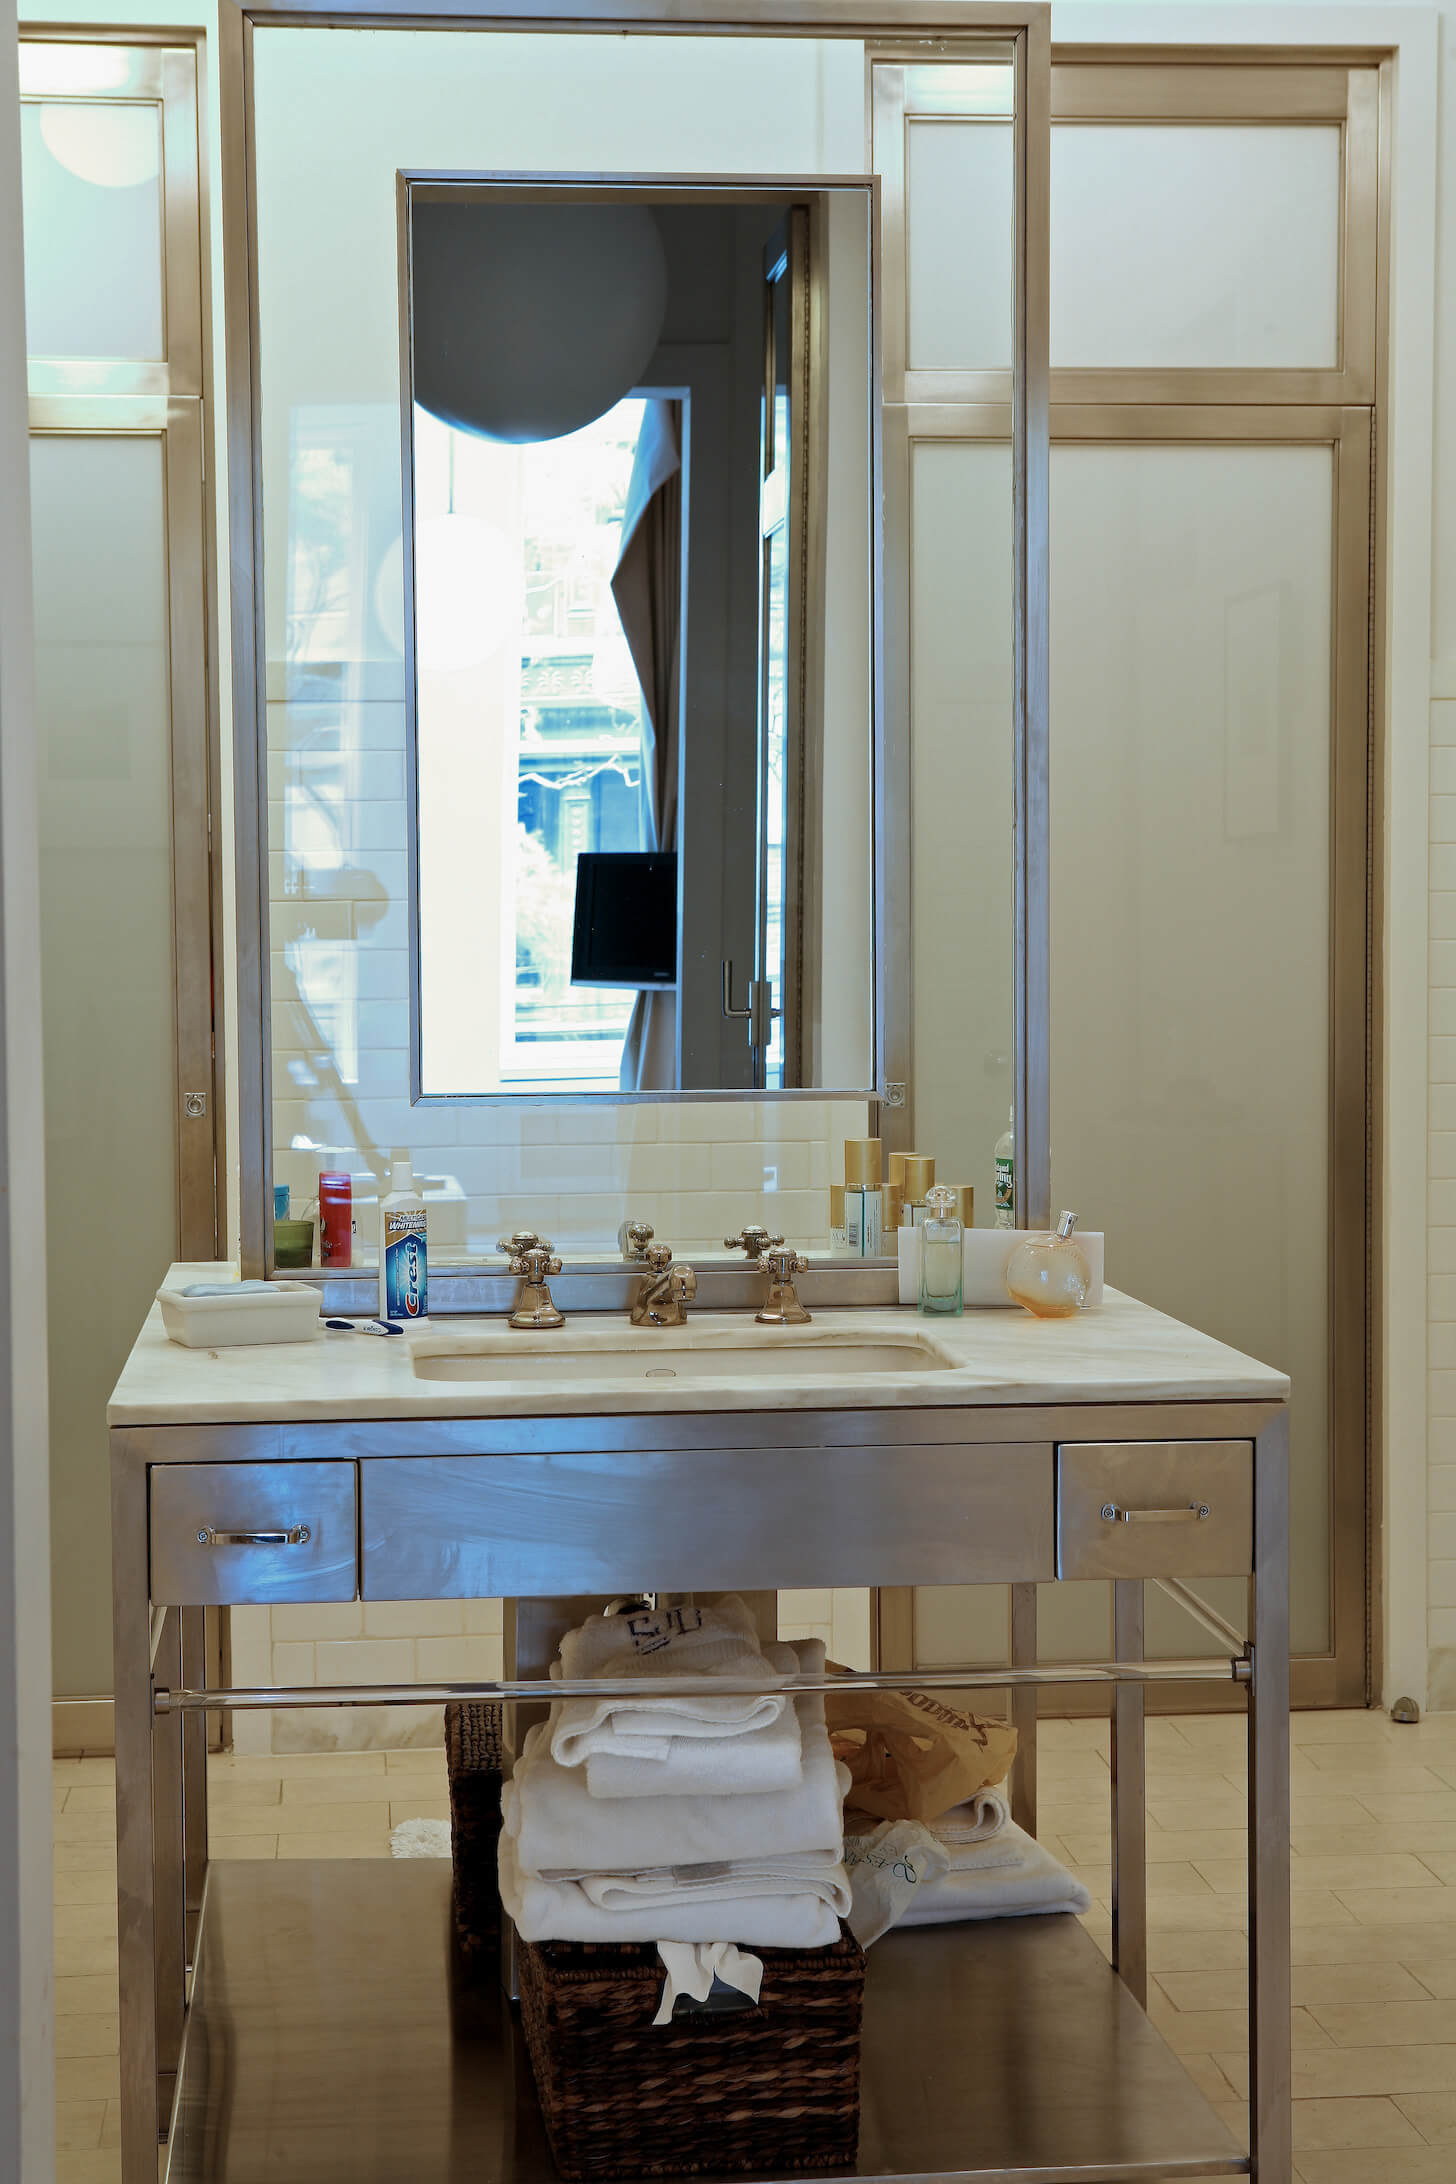 浴室设有一个独立的钢制梳妆台，带有独特的镜子功能，镜框在玻璃中。奶油色地砖与大理石台面相配。